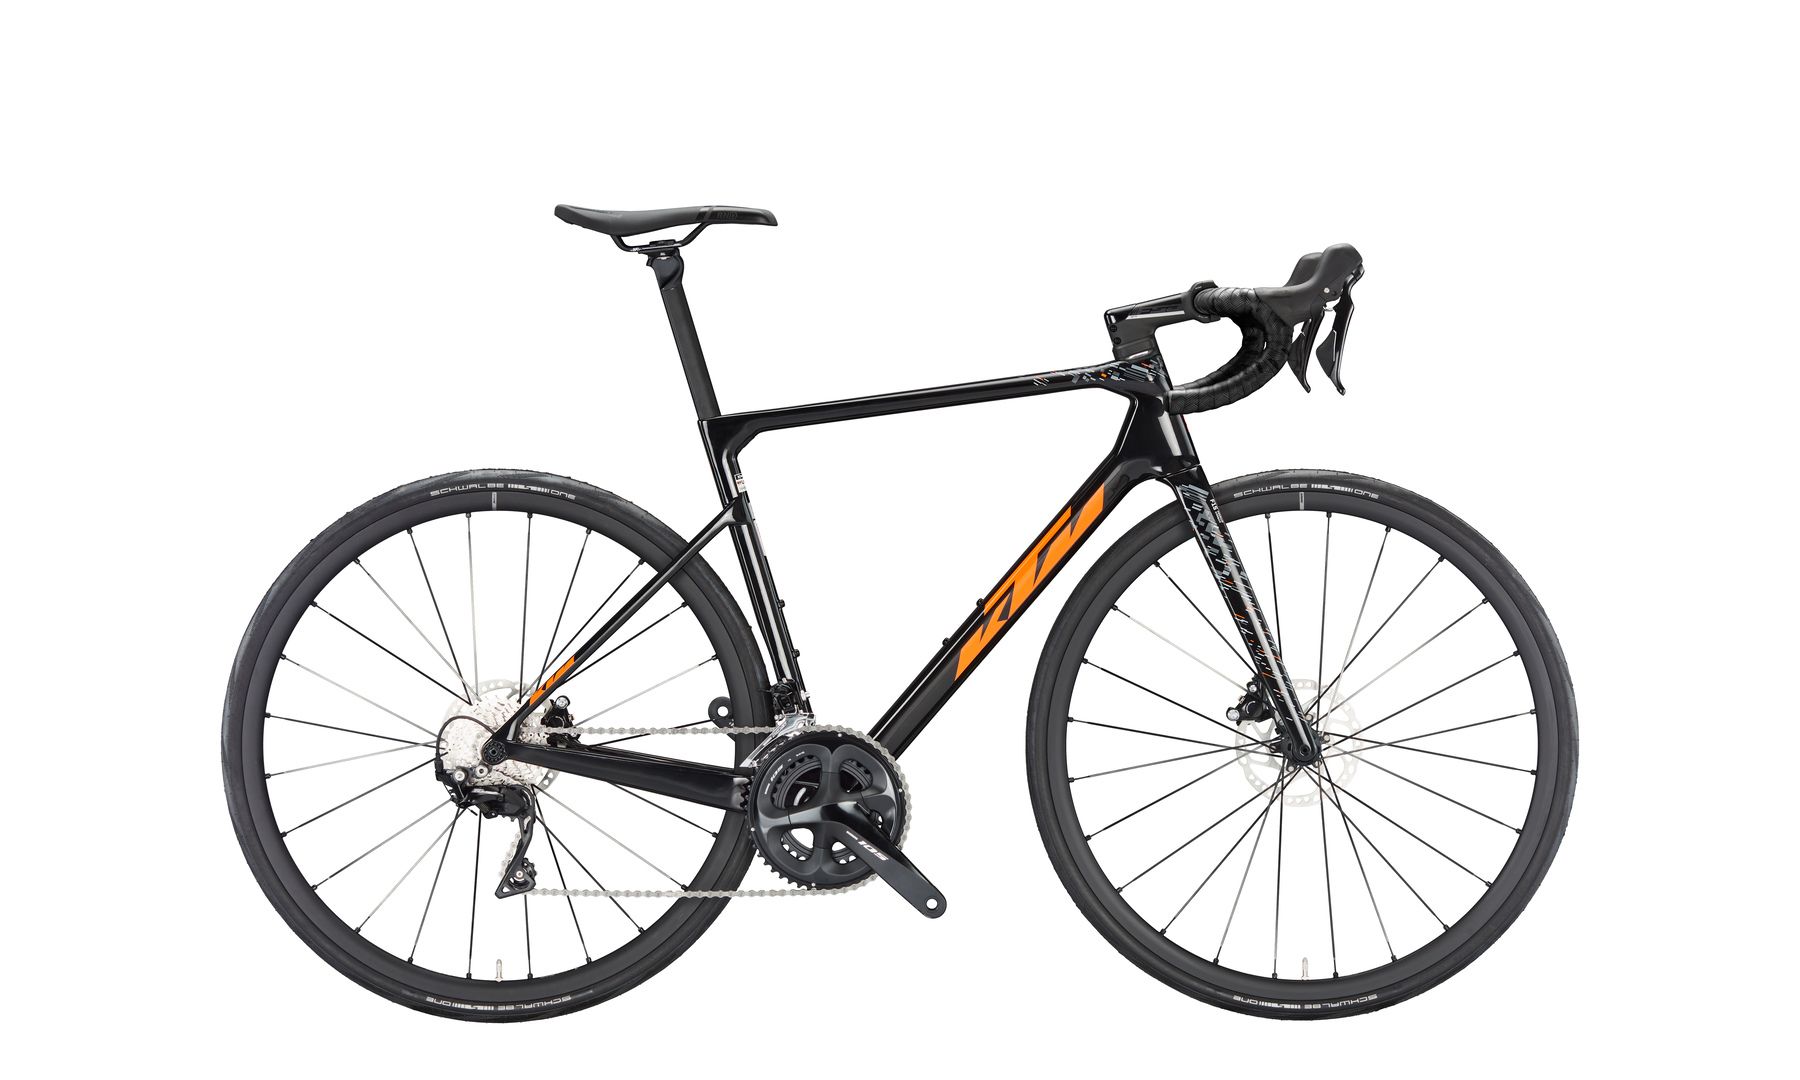 Jalgratas KTM REVELATOR ALTO ELITE Shimano 105 2x11 carbon (orange+grey)